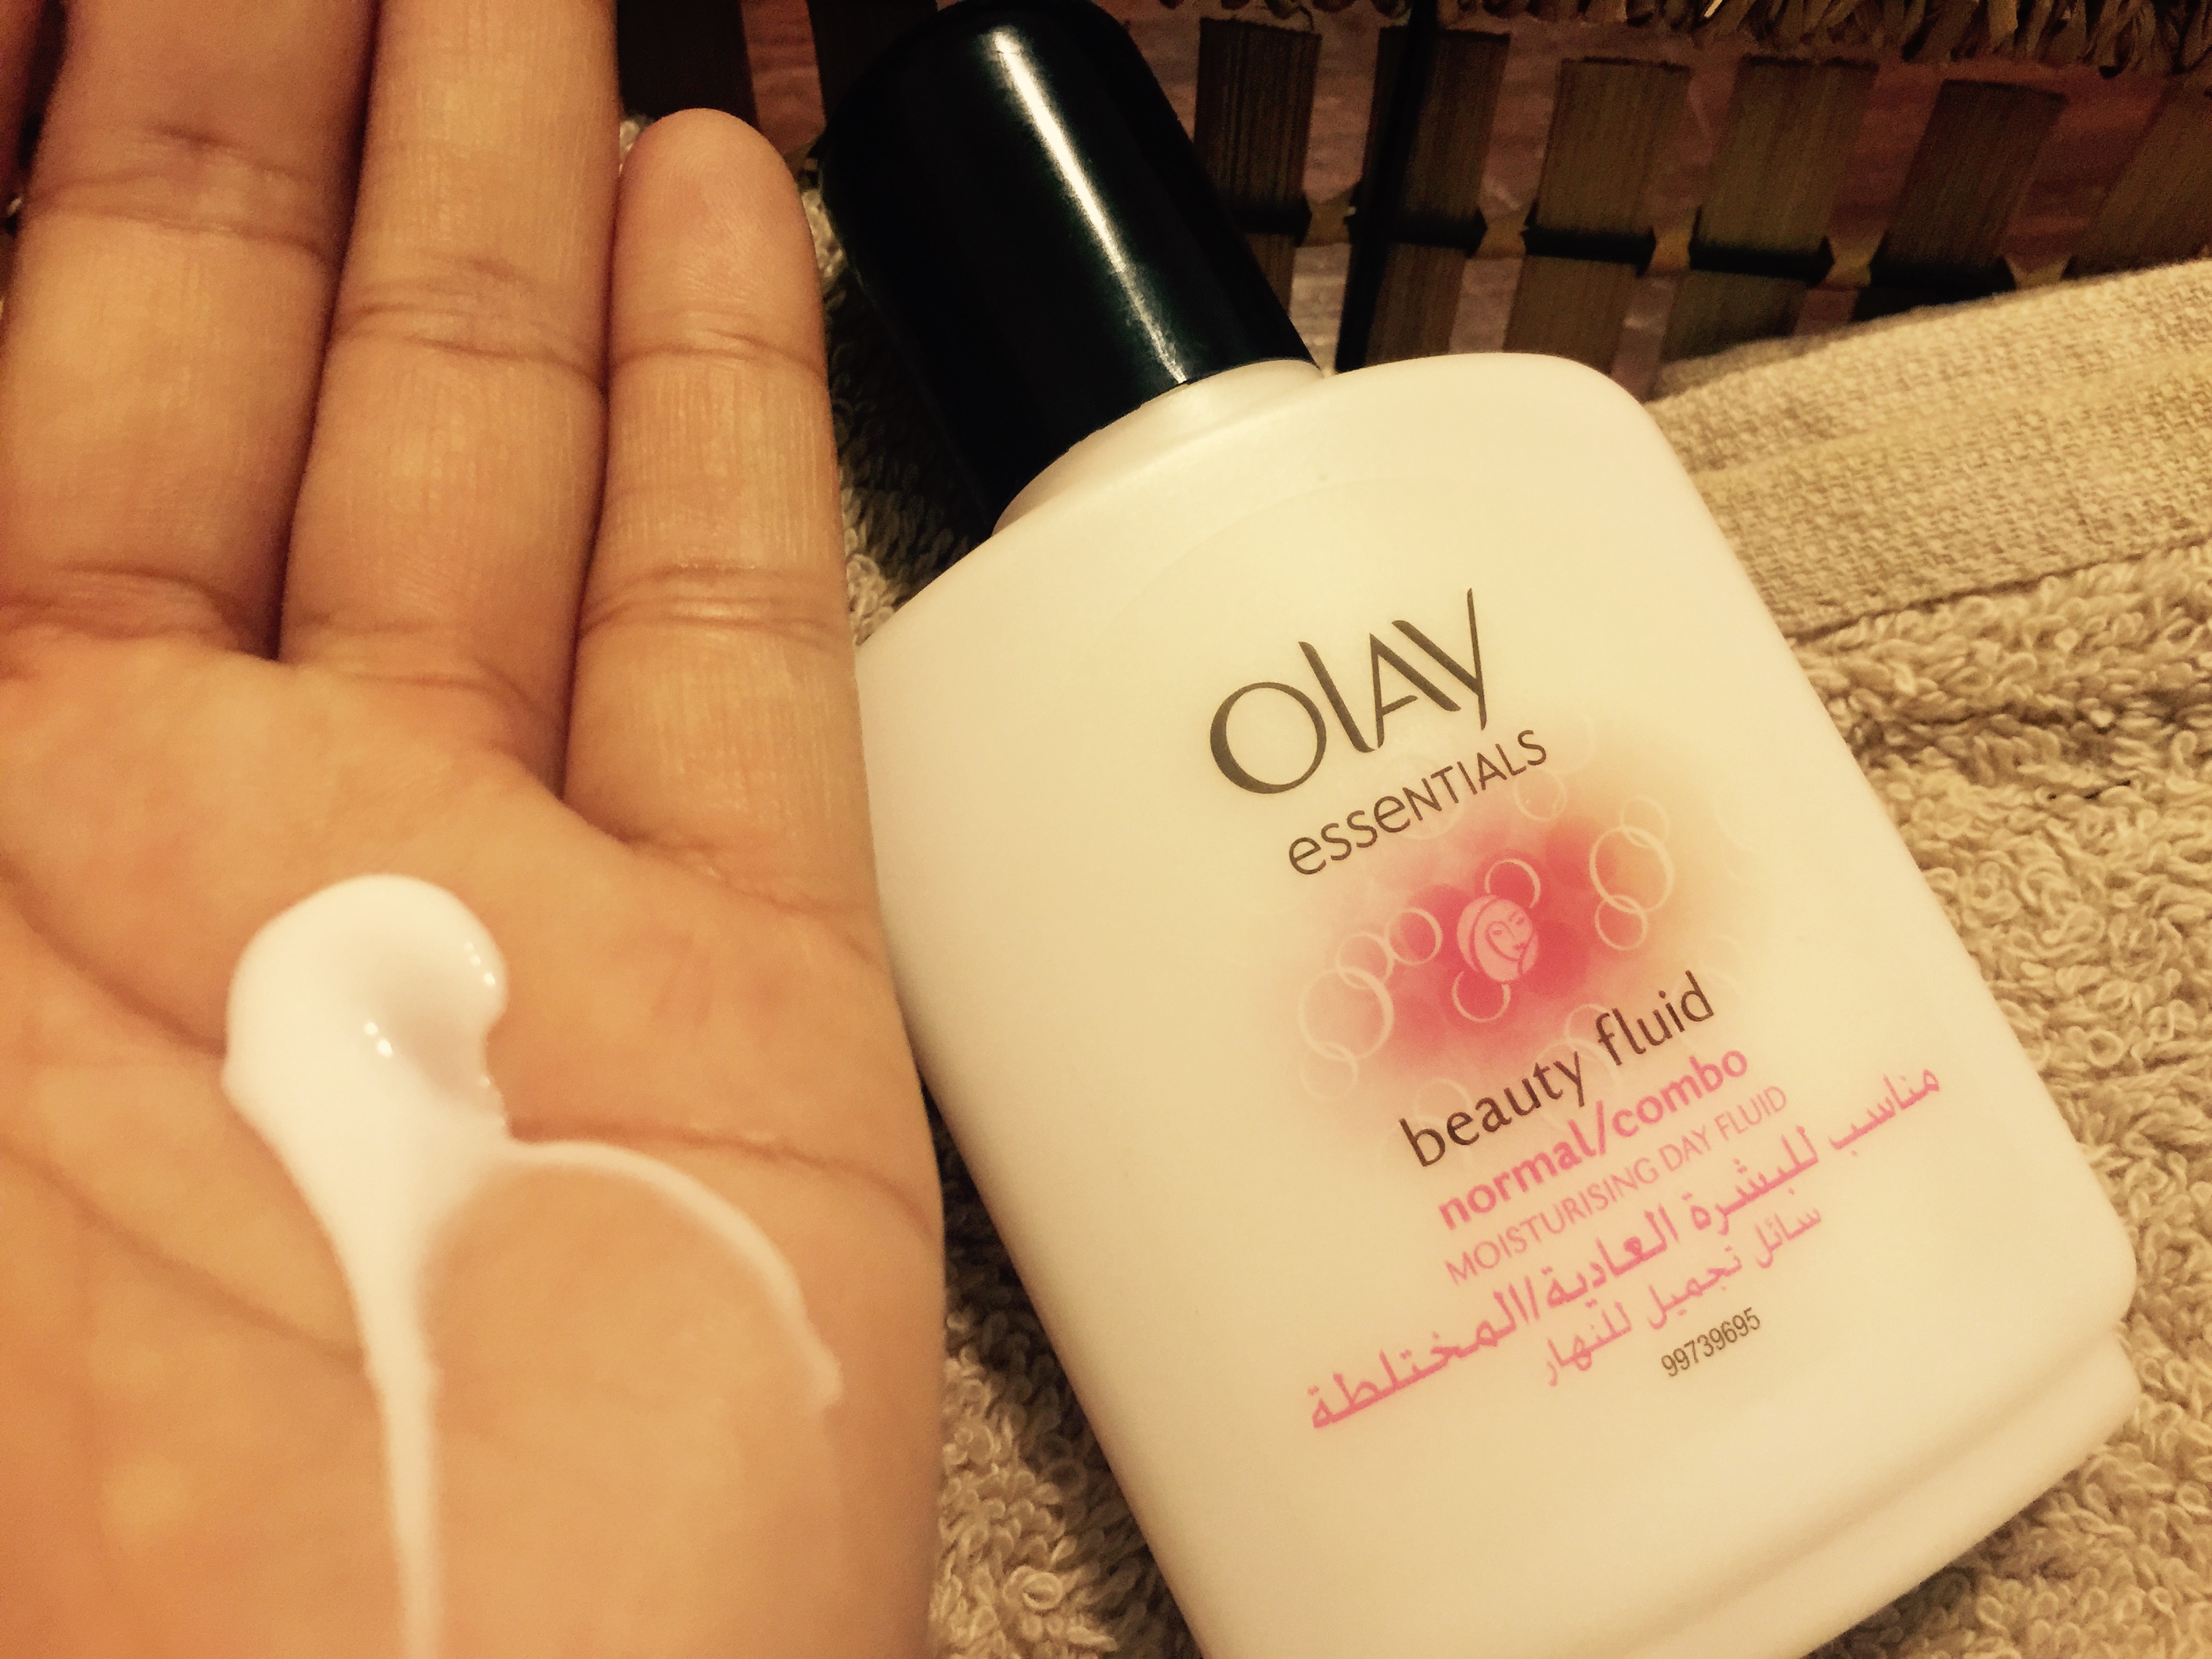 Olay Essentials Beauty Fluid Oil Of Olay Beauty Fluid Olay Beauty Fluid Review Oil Of Olay Face Cream